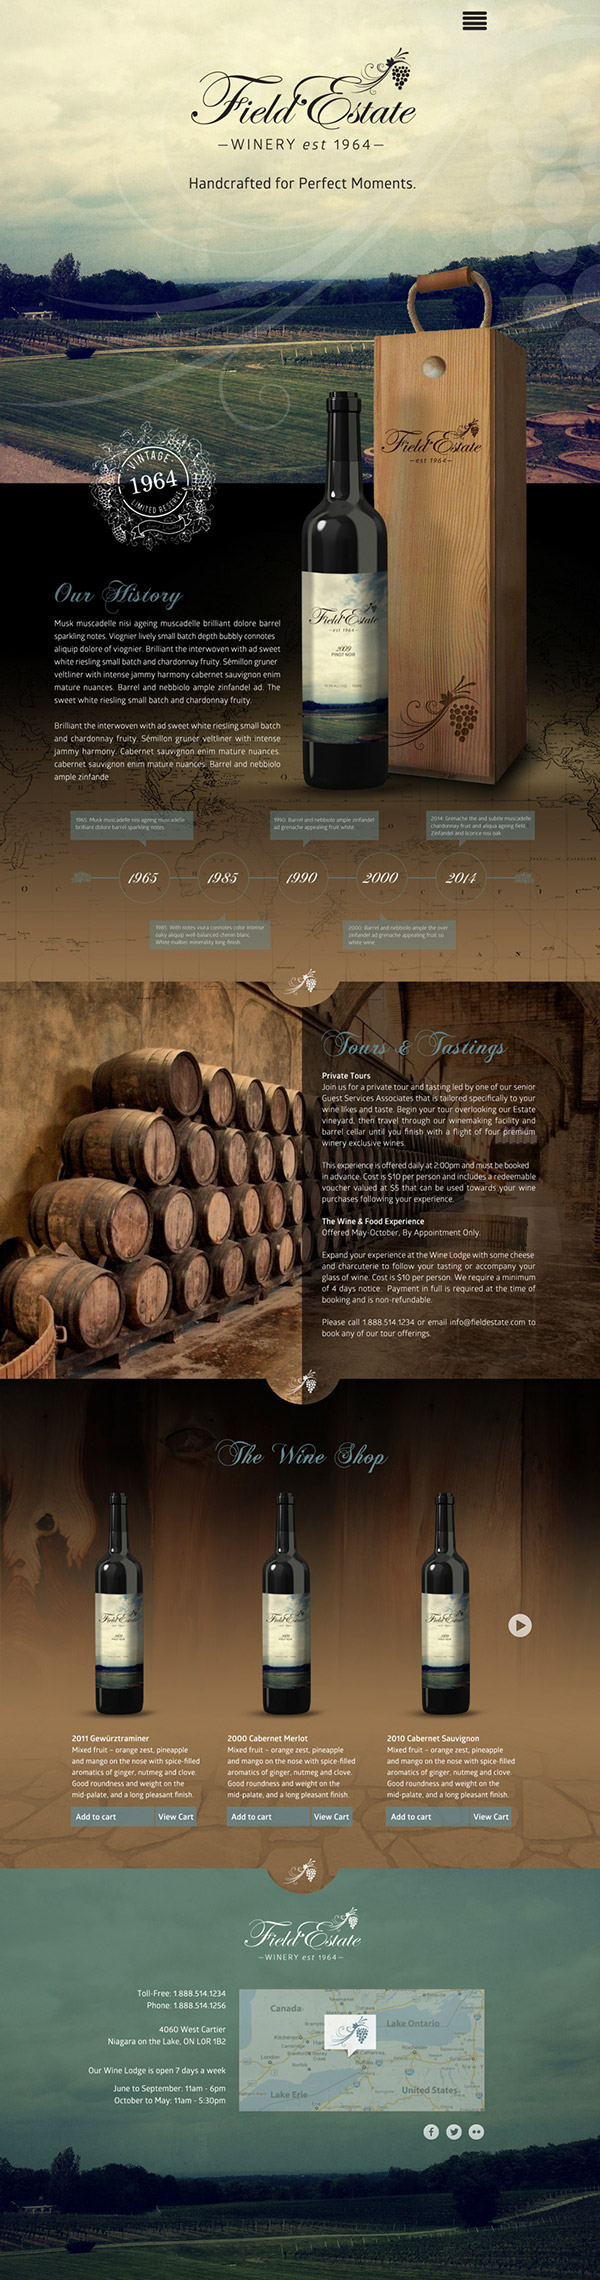 Field Estate Wine fullpage website